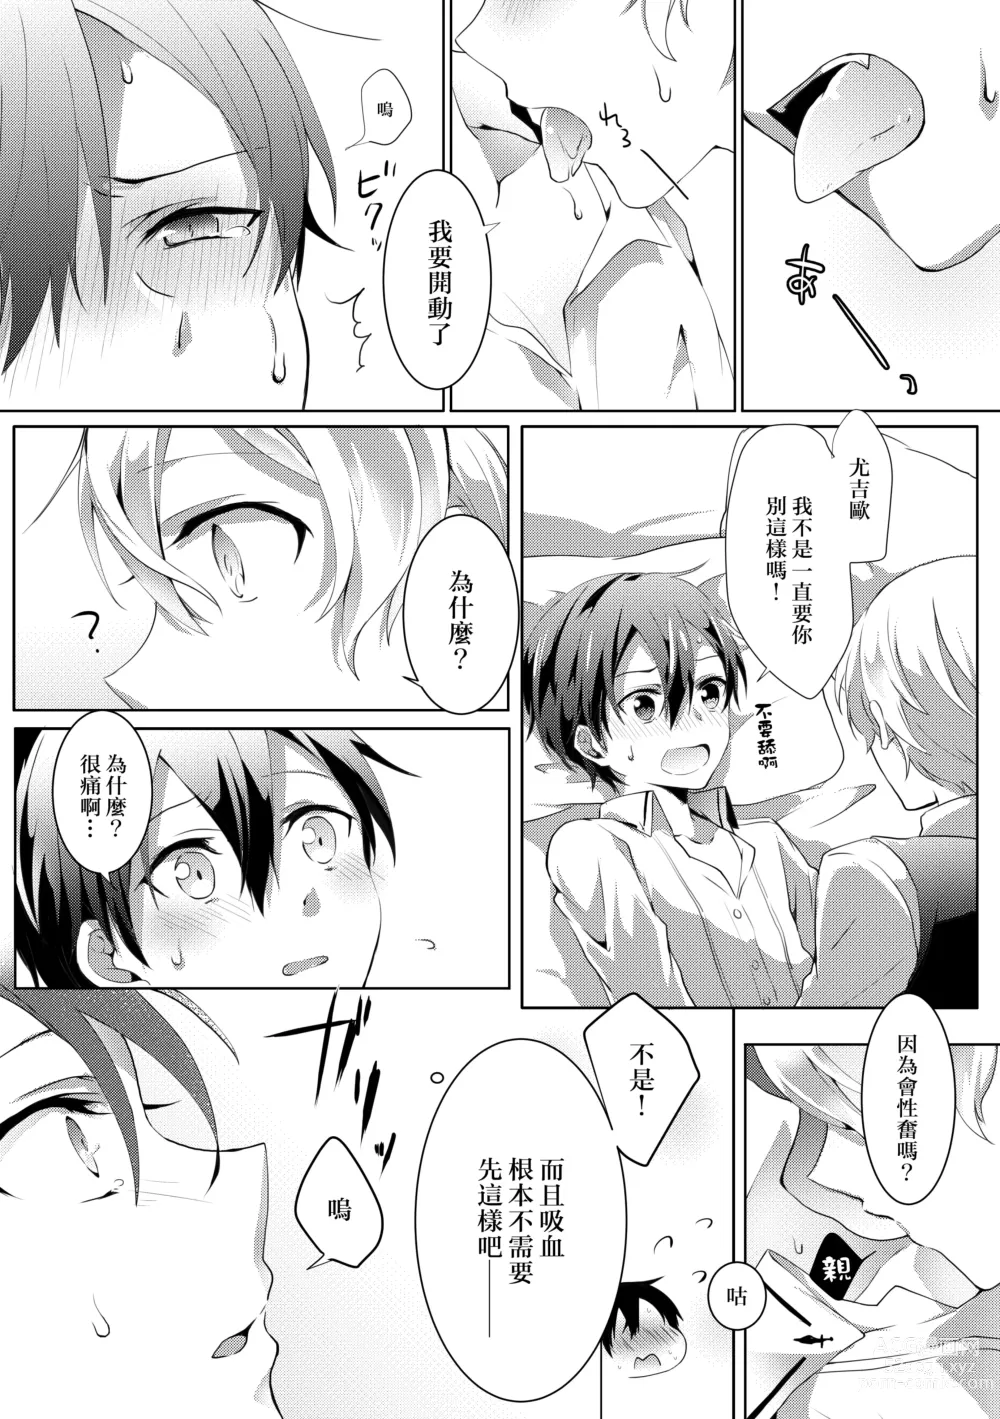 Page 8 of doujinshi Kimi to Boku no Waltz